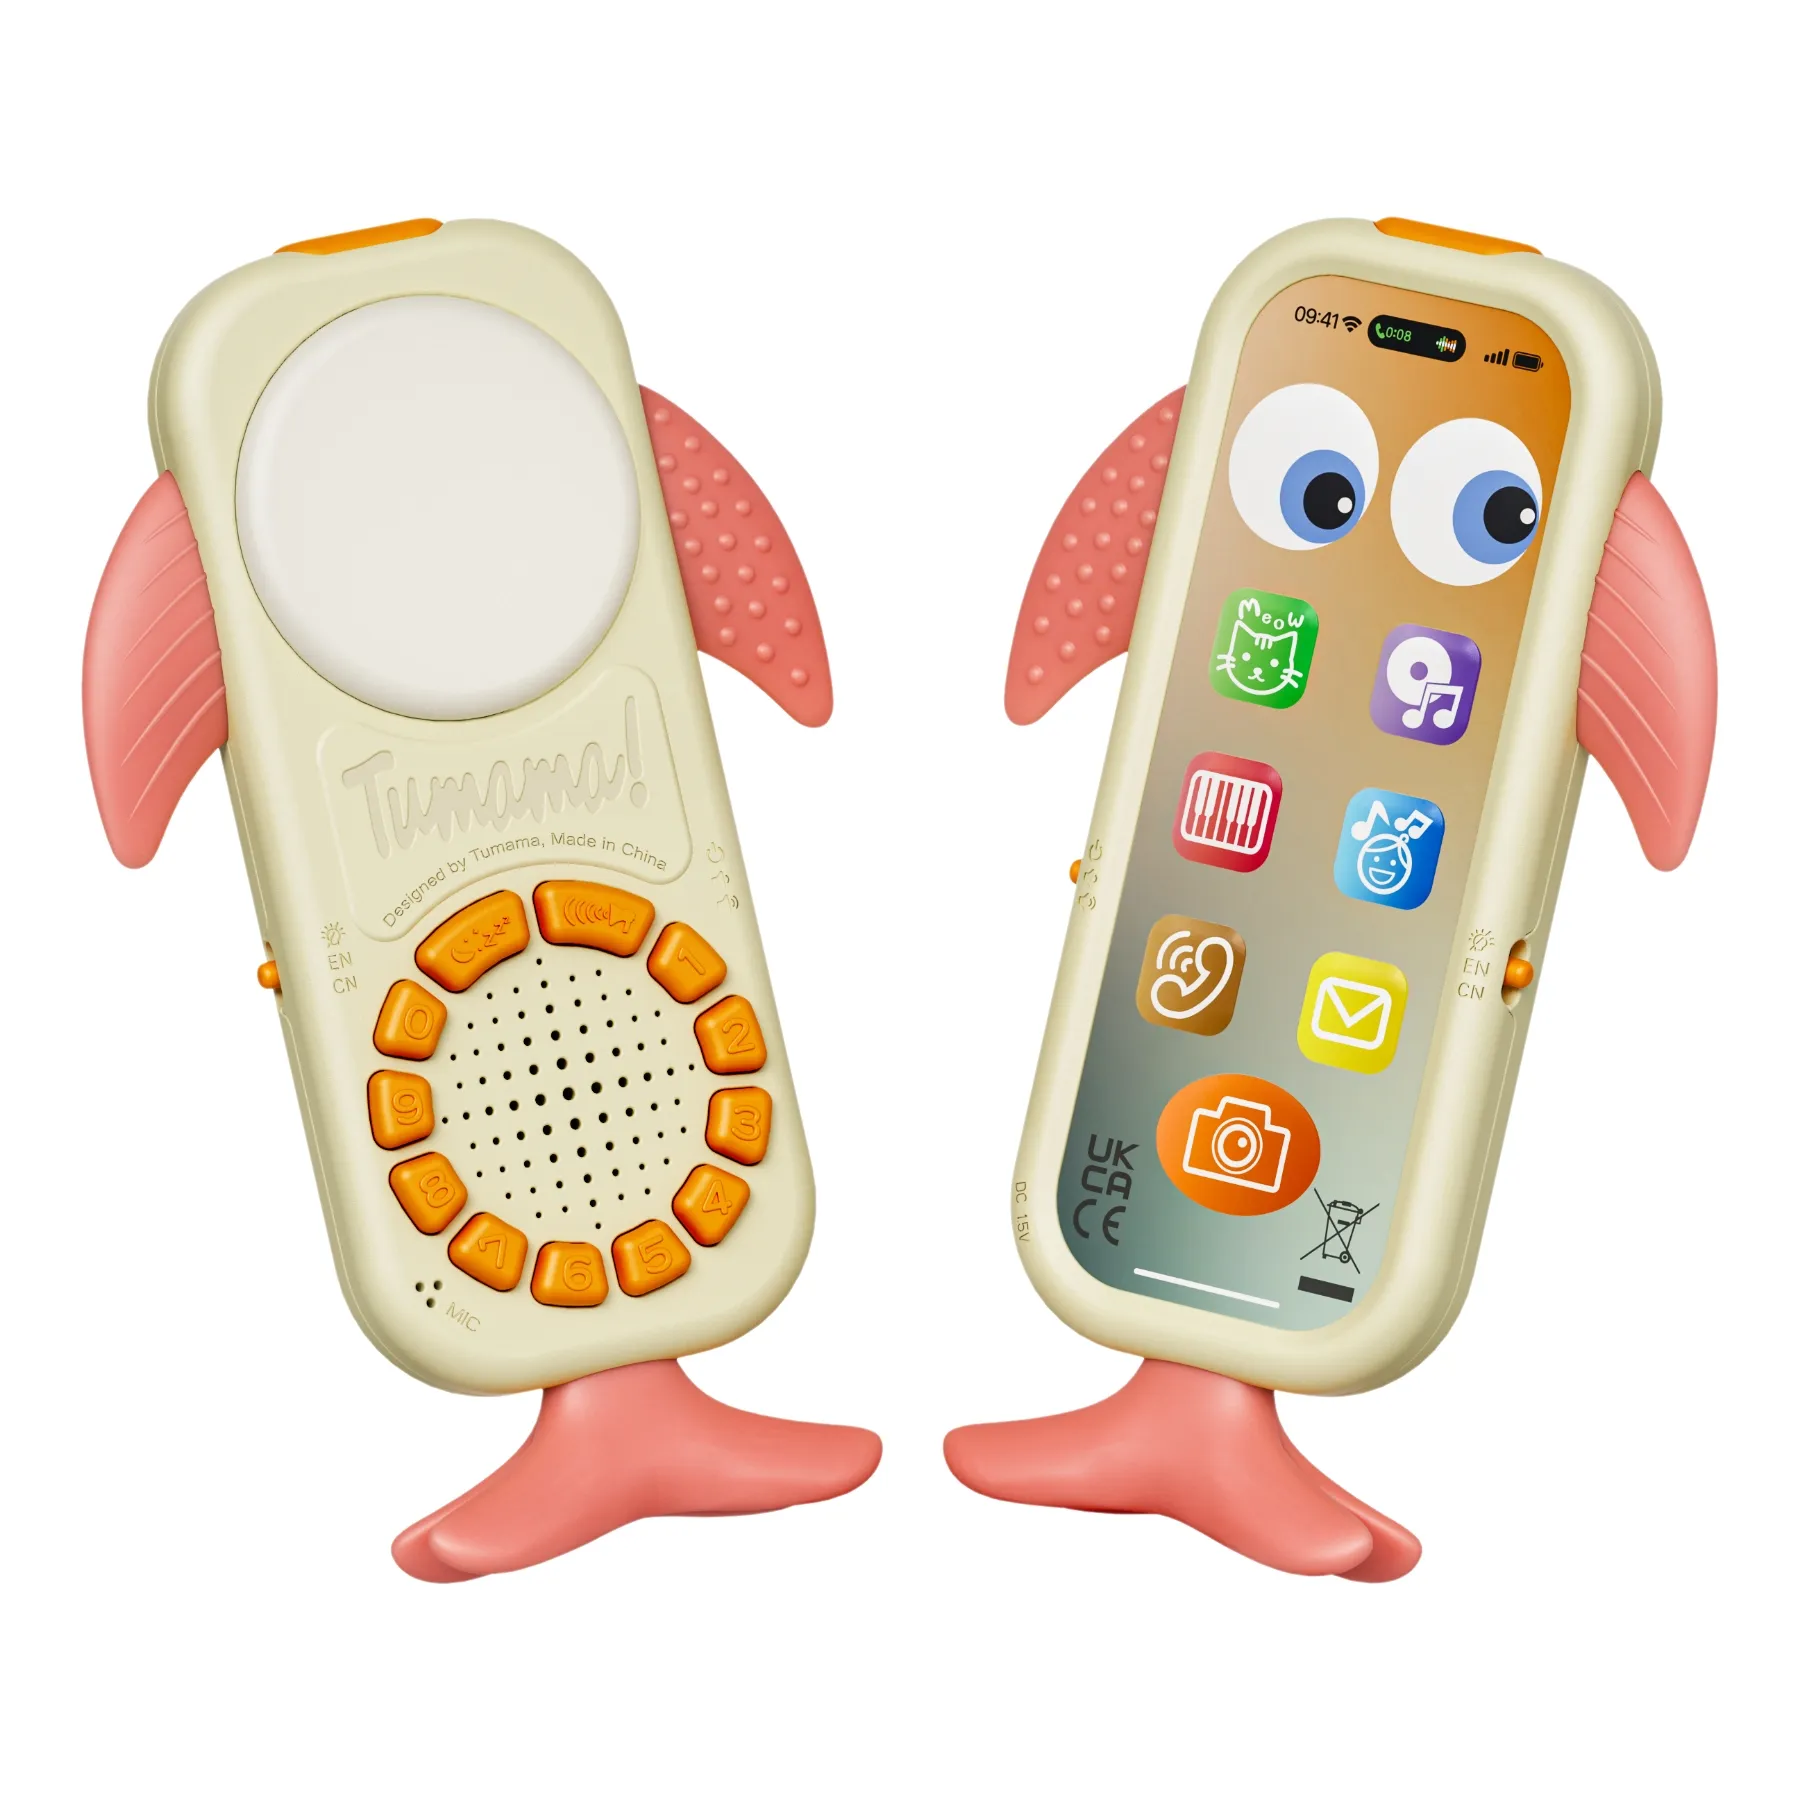 Tumama çocuklar balina tasarım müzikal cep telefonu çocuklar öğrenme akıllı telefon oyuncaklar ses kayıt bebek Mini cep telefonu oyuncak